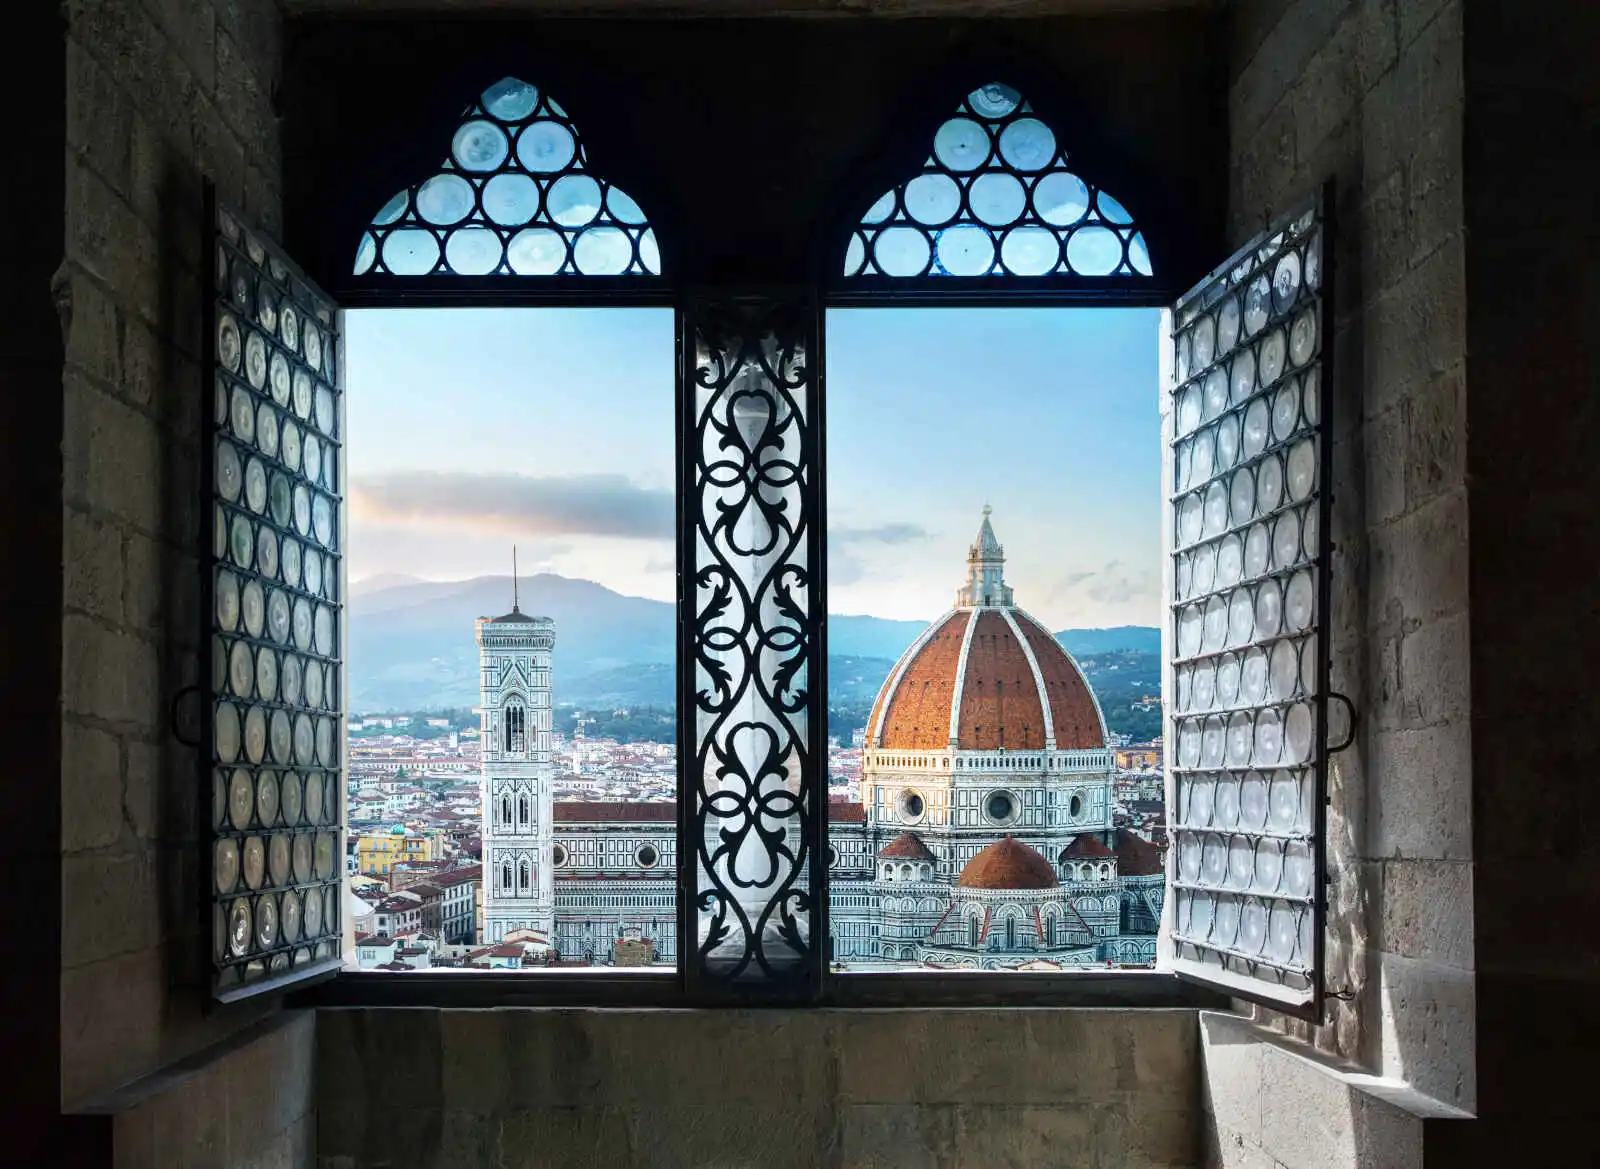 Vue depuis une fenêtre de la basilique di Santa Maria, Florence, Italie